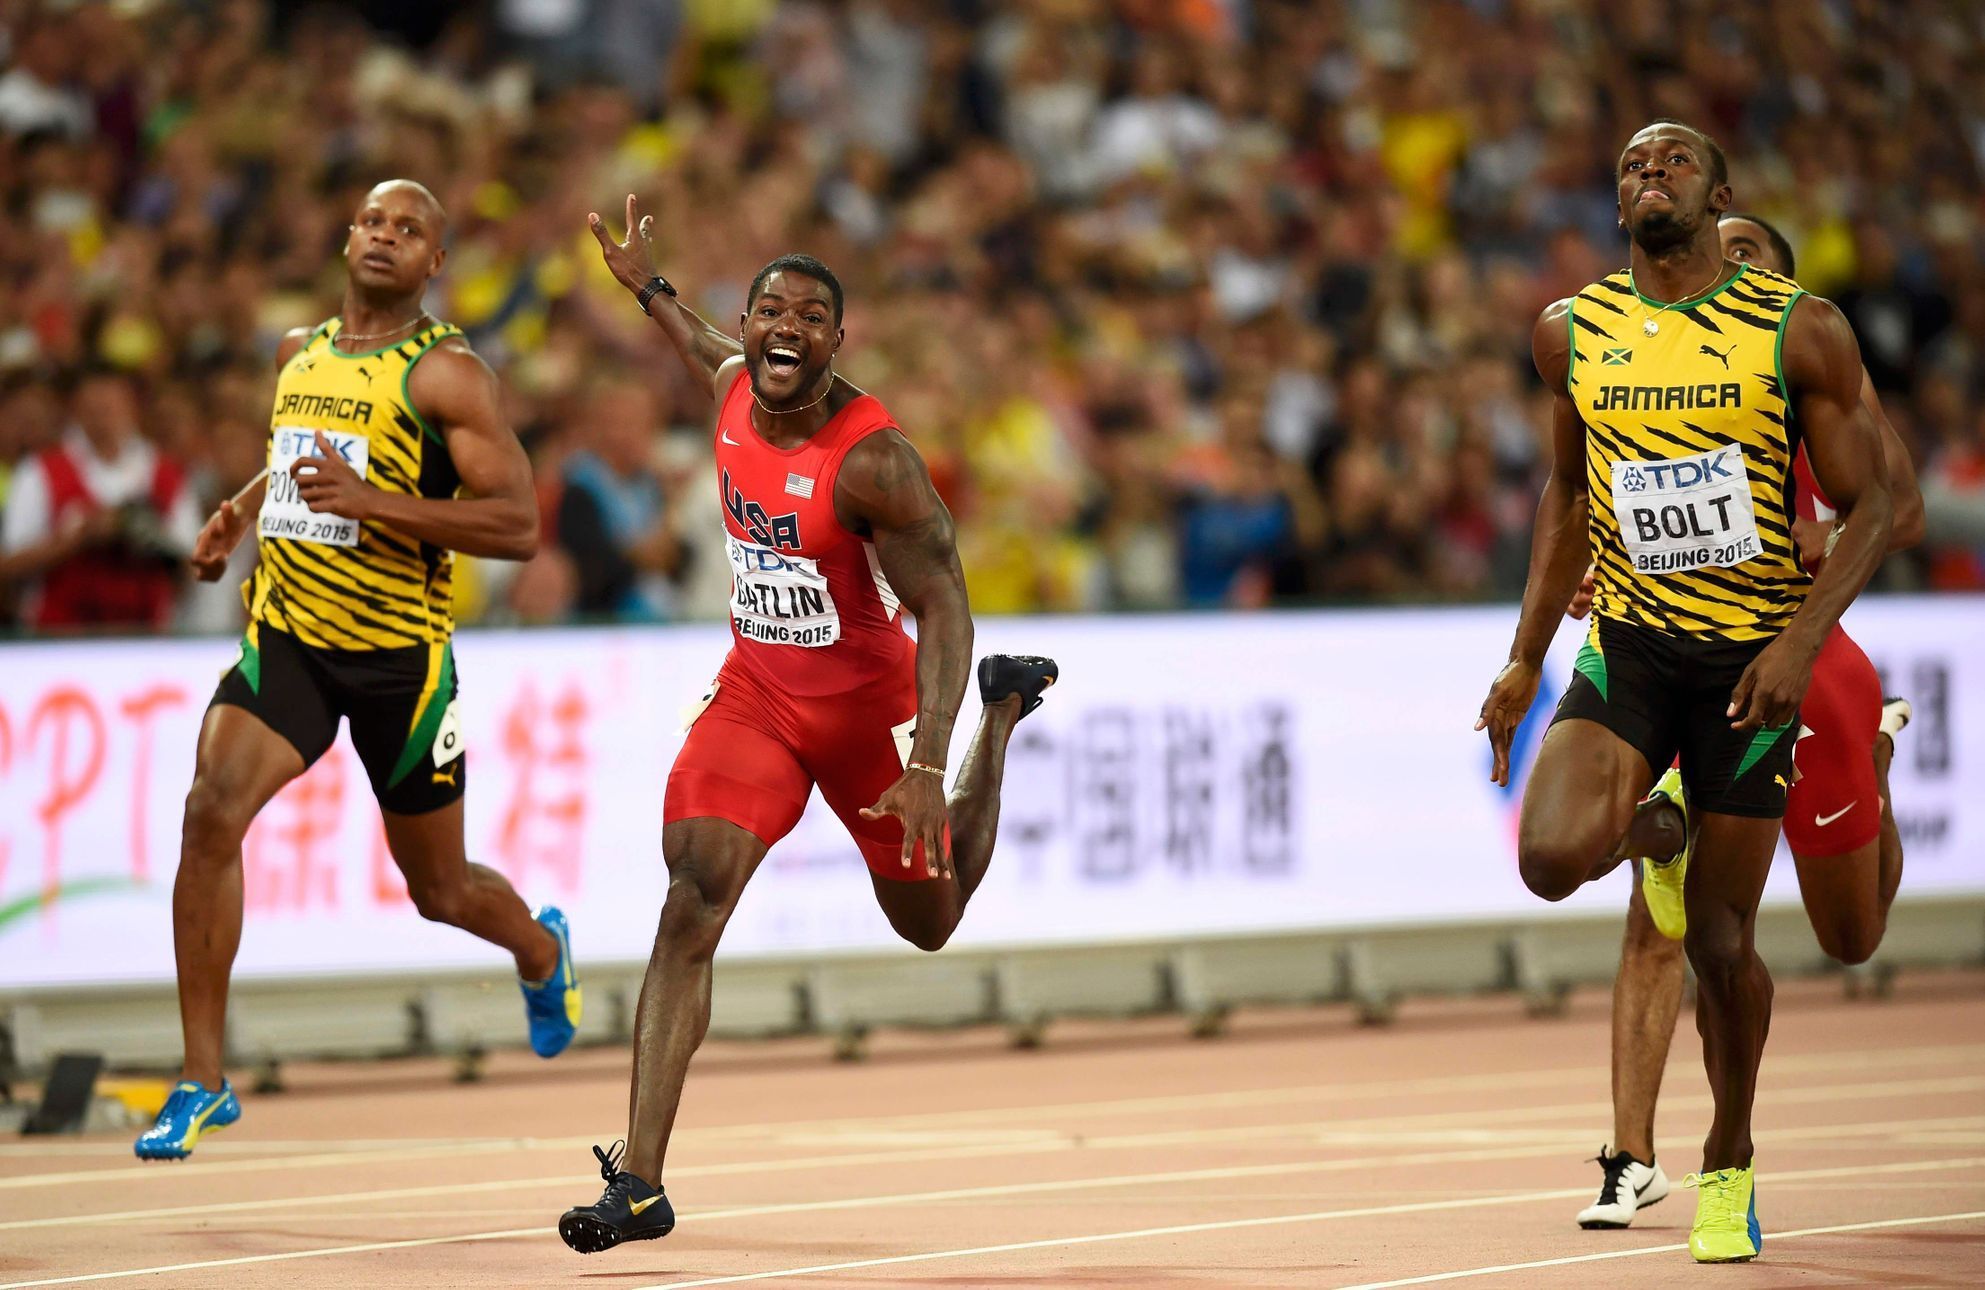 MS v atletice 2015 - neděle 23. srpna (finále běhu na 100 m - Bolt a Gatlin)